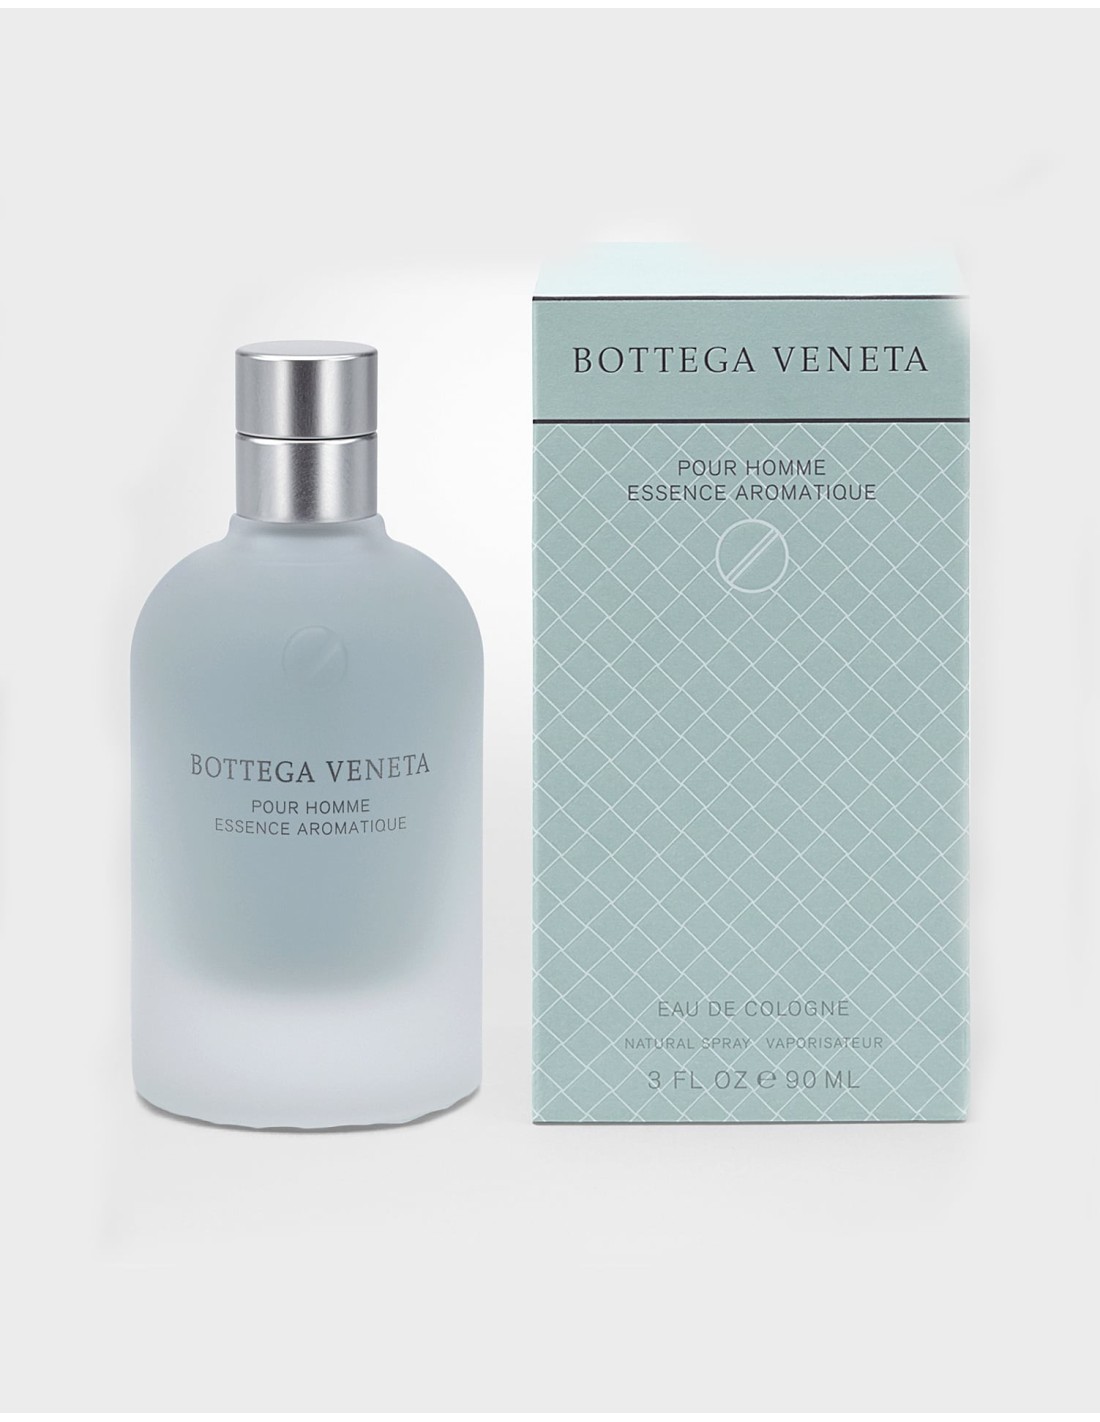 Bottega Veneta Essence Aromatique 90 ml eau de cologne